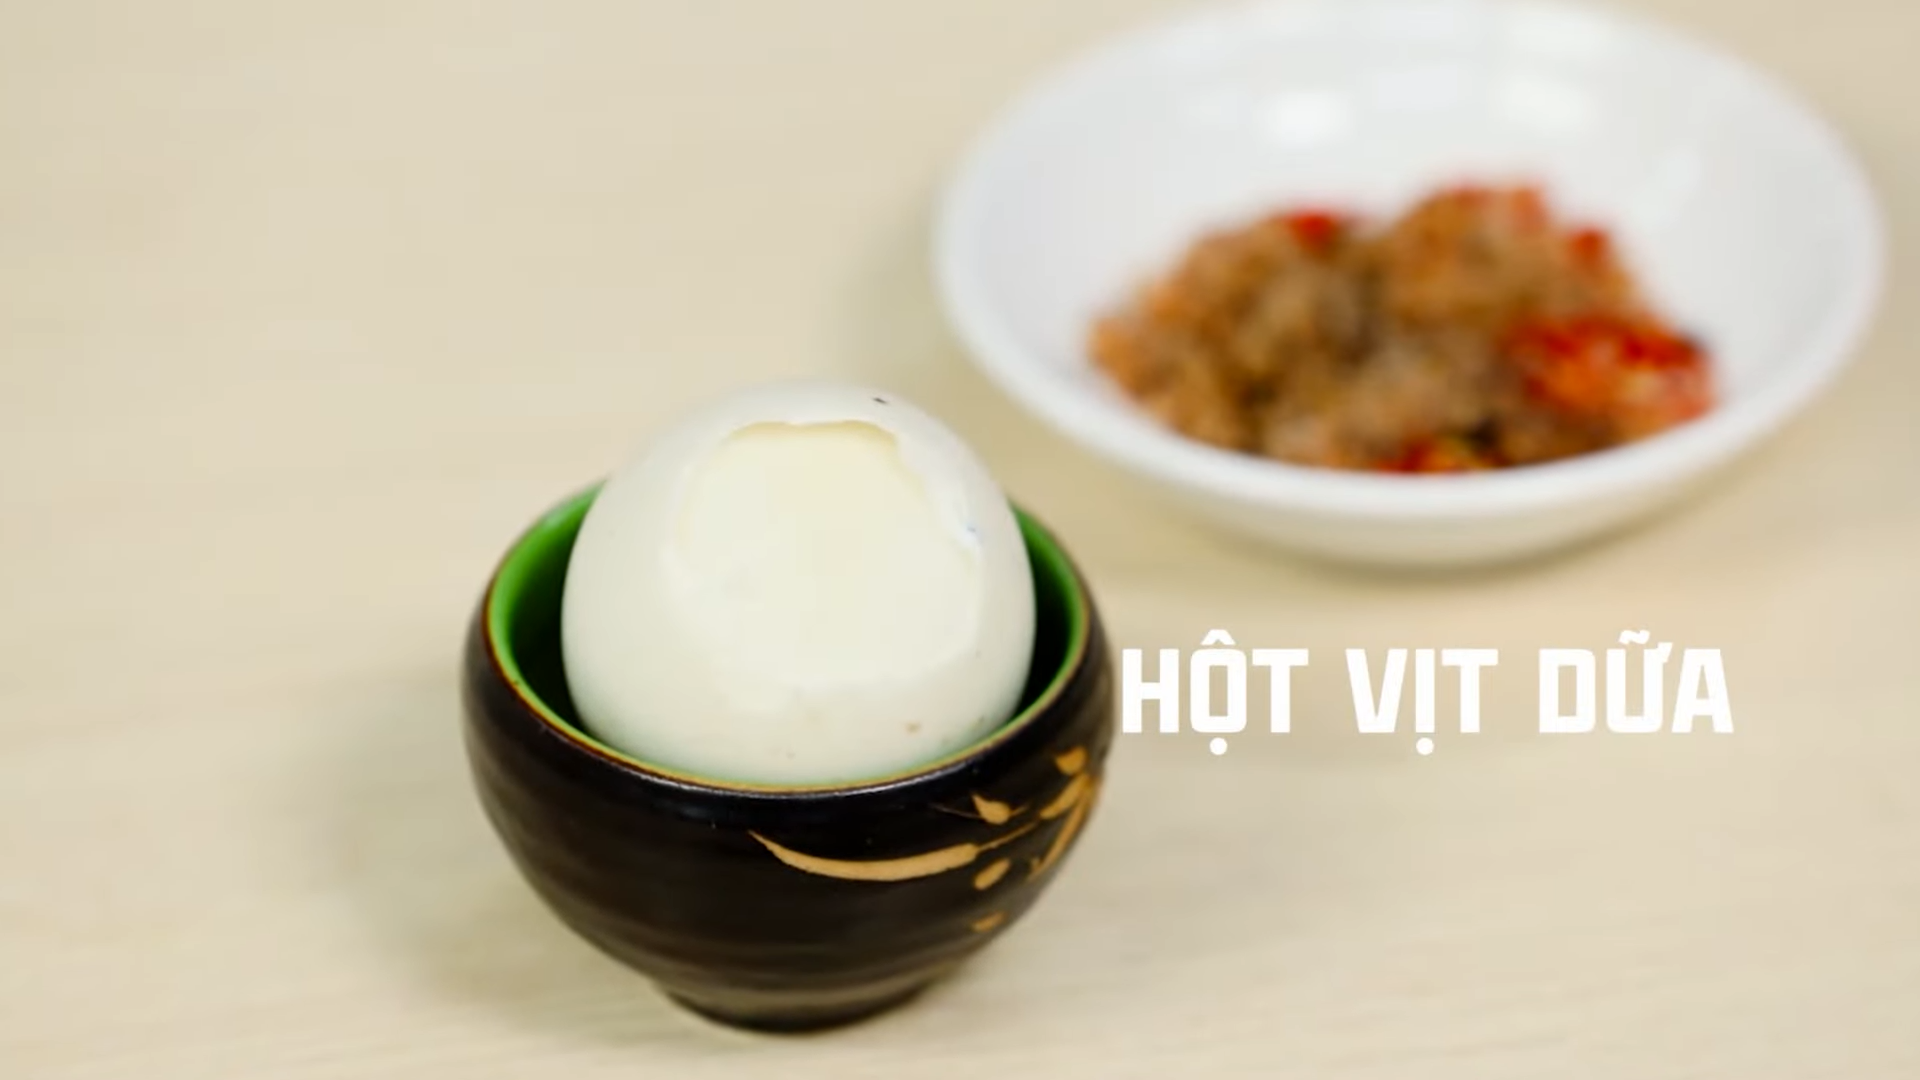 Khách Tây thưởng thức các món trứng của Việt Nam: Món đáng sợ nhất thế giới hóa ra lại ngon không tưởng - Ảnh 5.